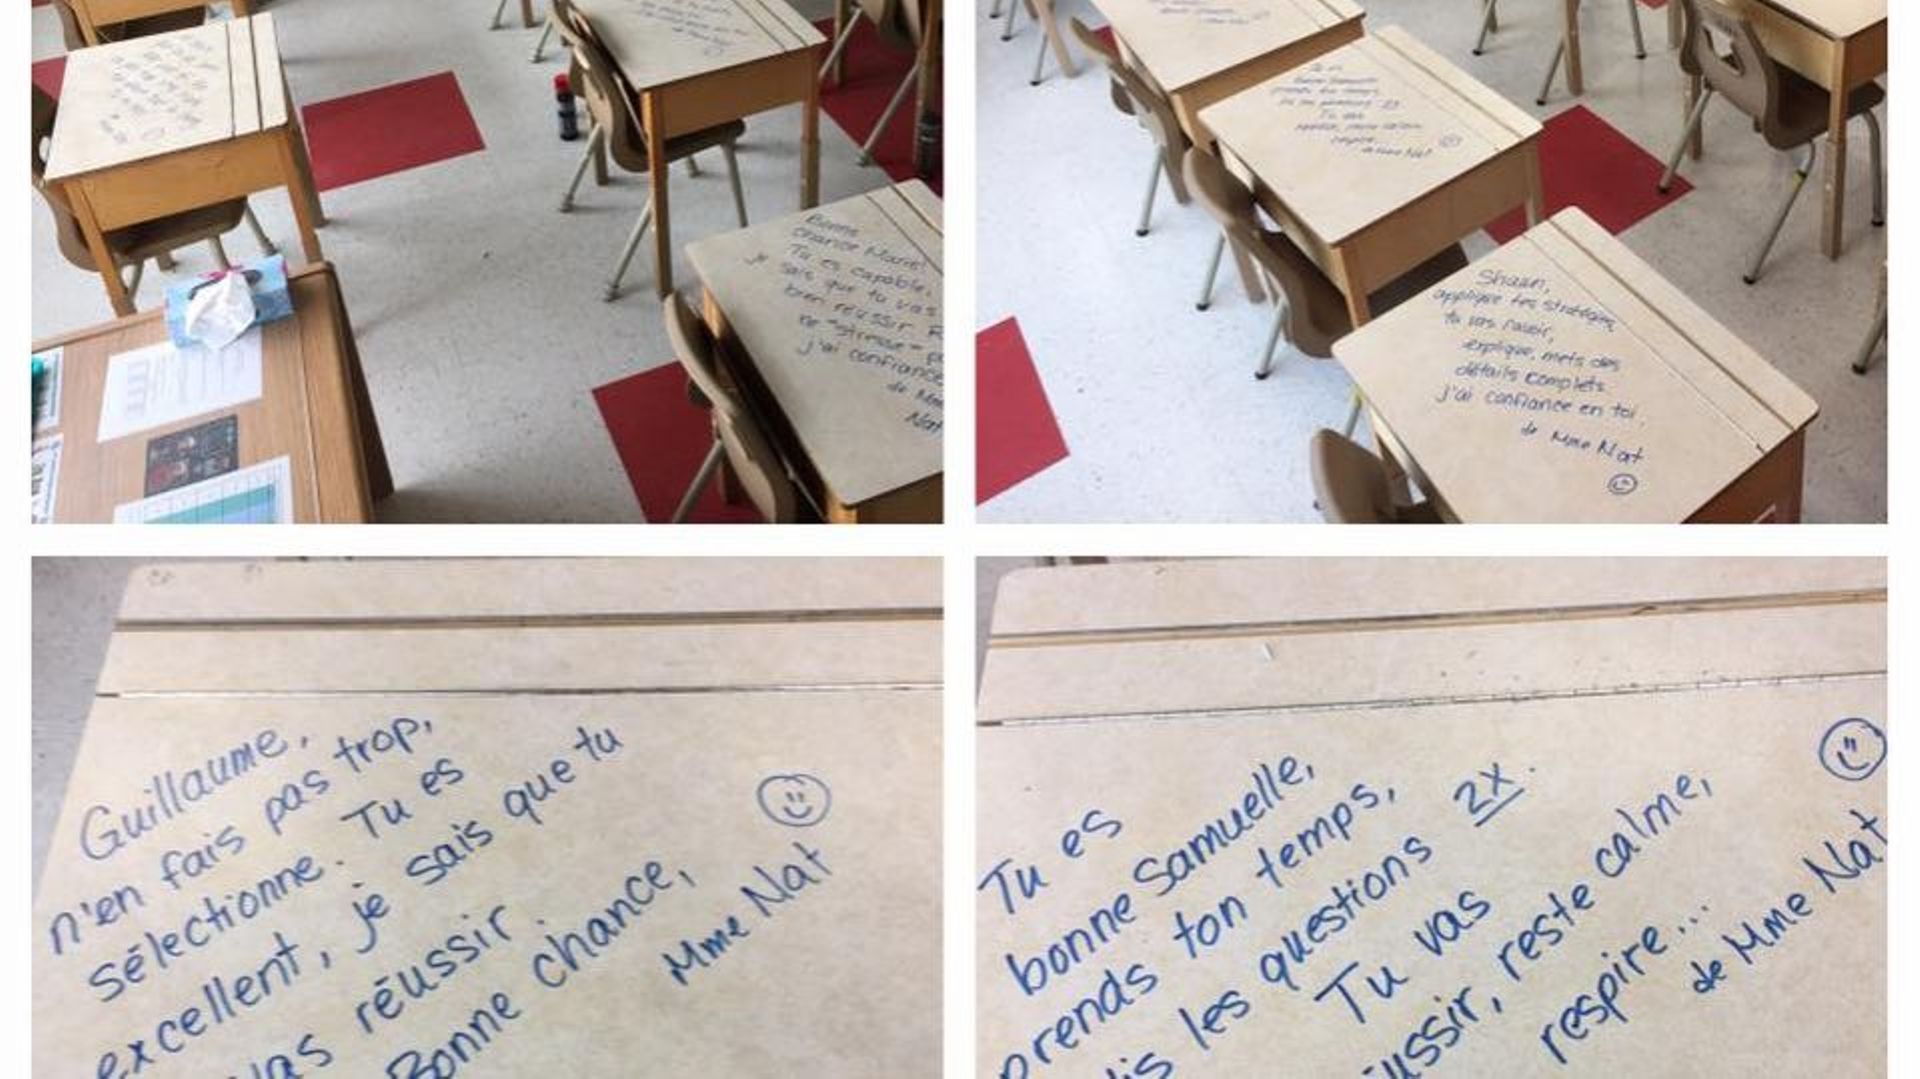 Elle écrit des encouragements sur le banc de ses élèves...